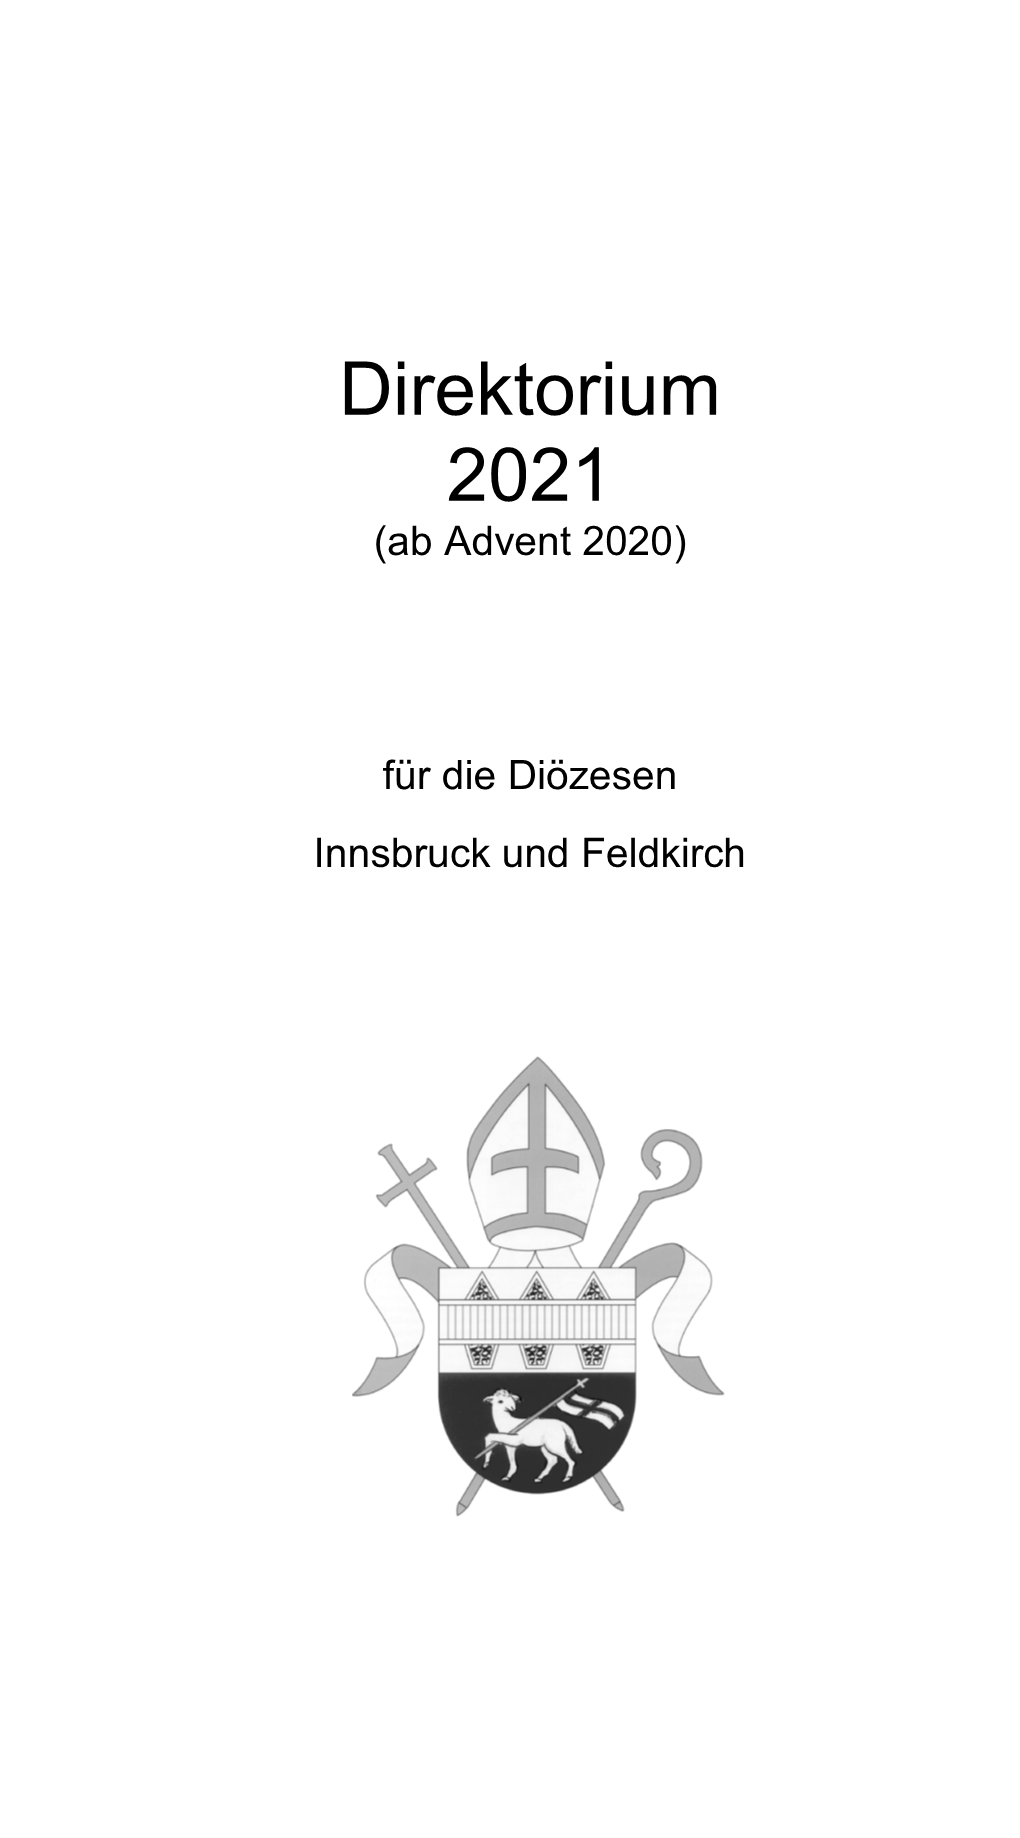 Direktorium 2021 (Ab Advent 2020)